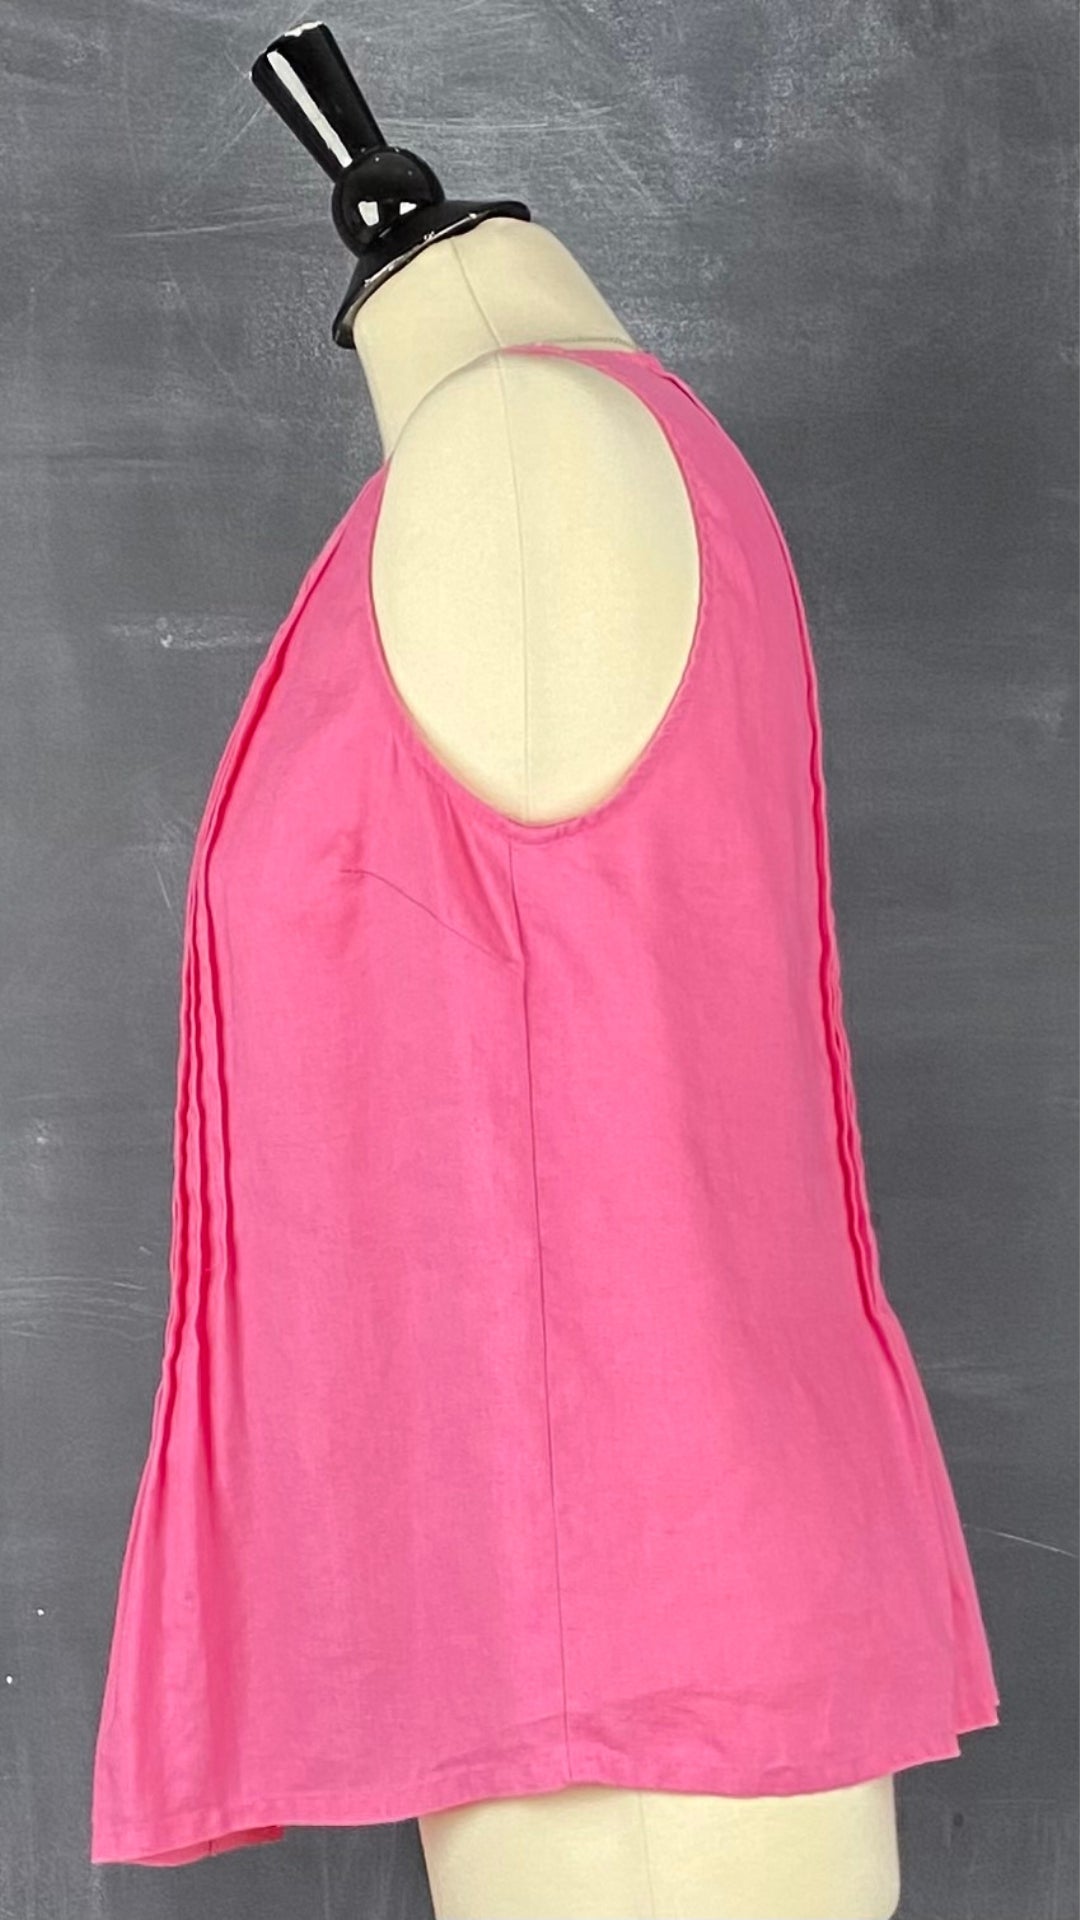 Blouse sans manches en lin rose, corsage plissé, Jones New York Sport, taille small. Vue de côté.